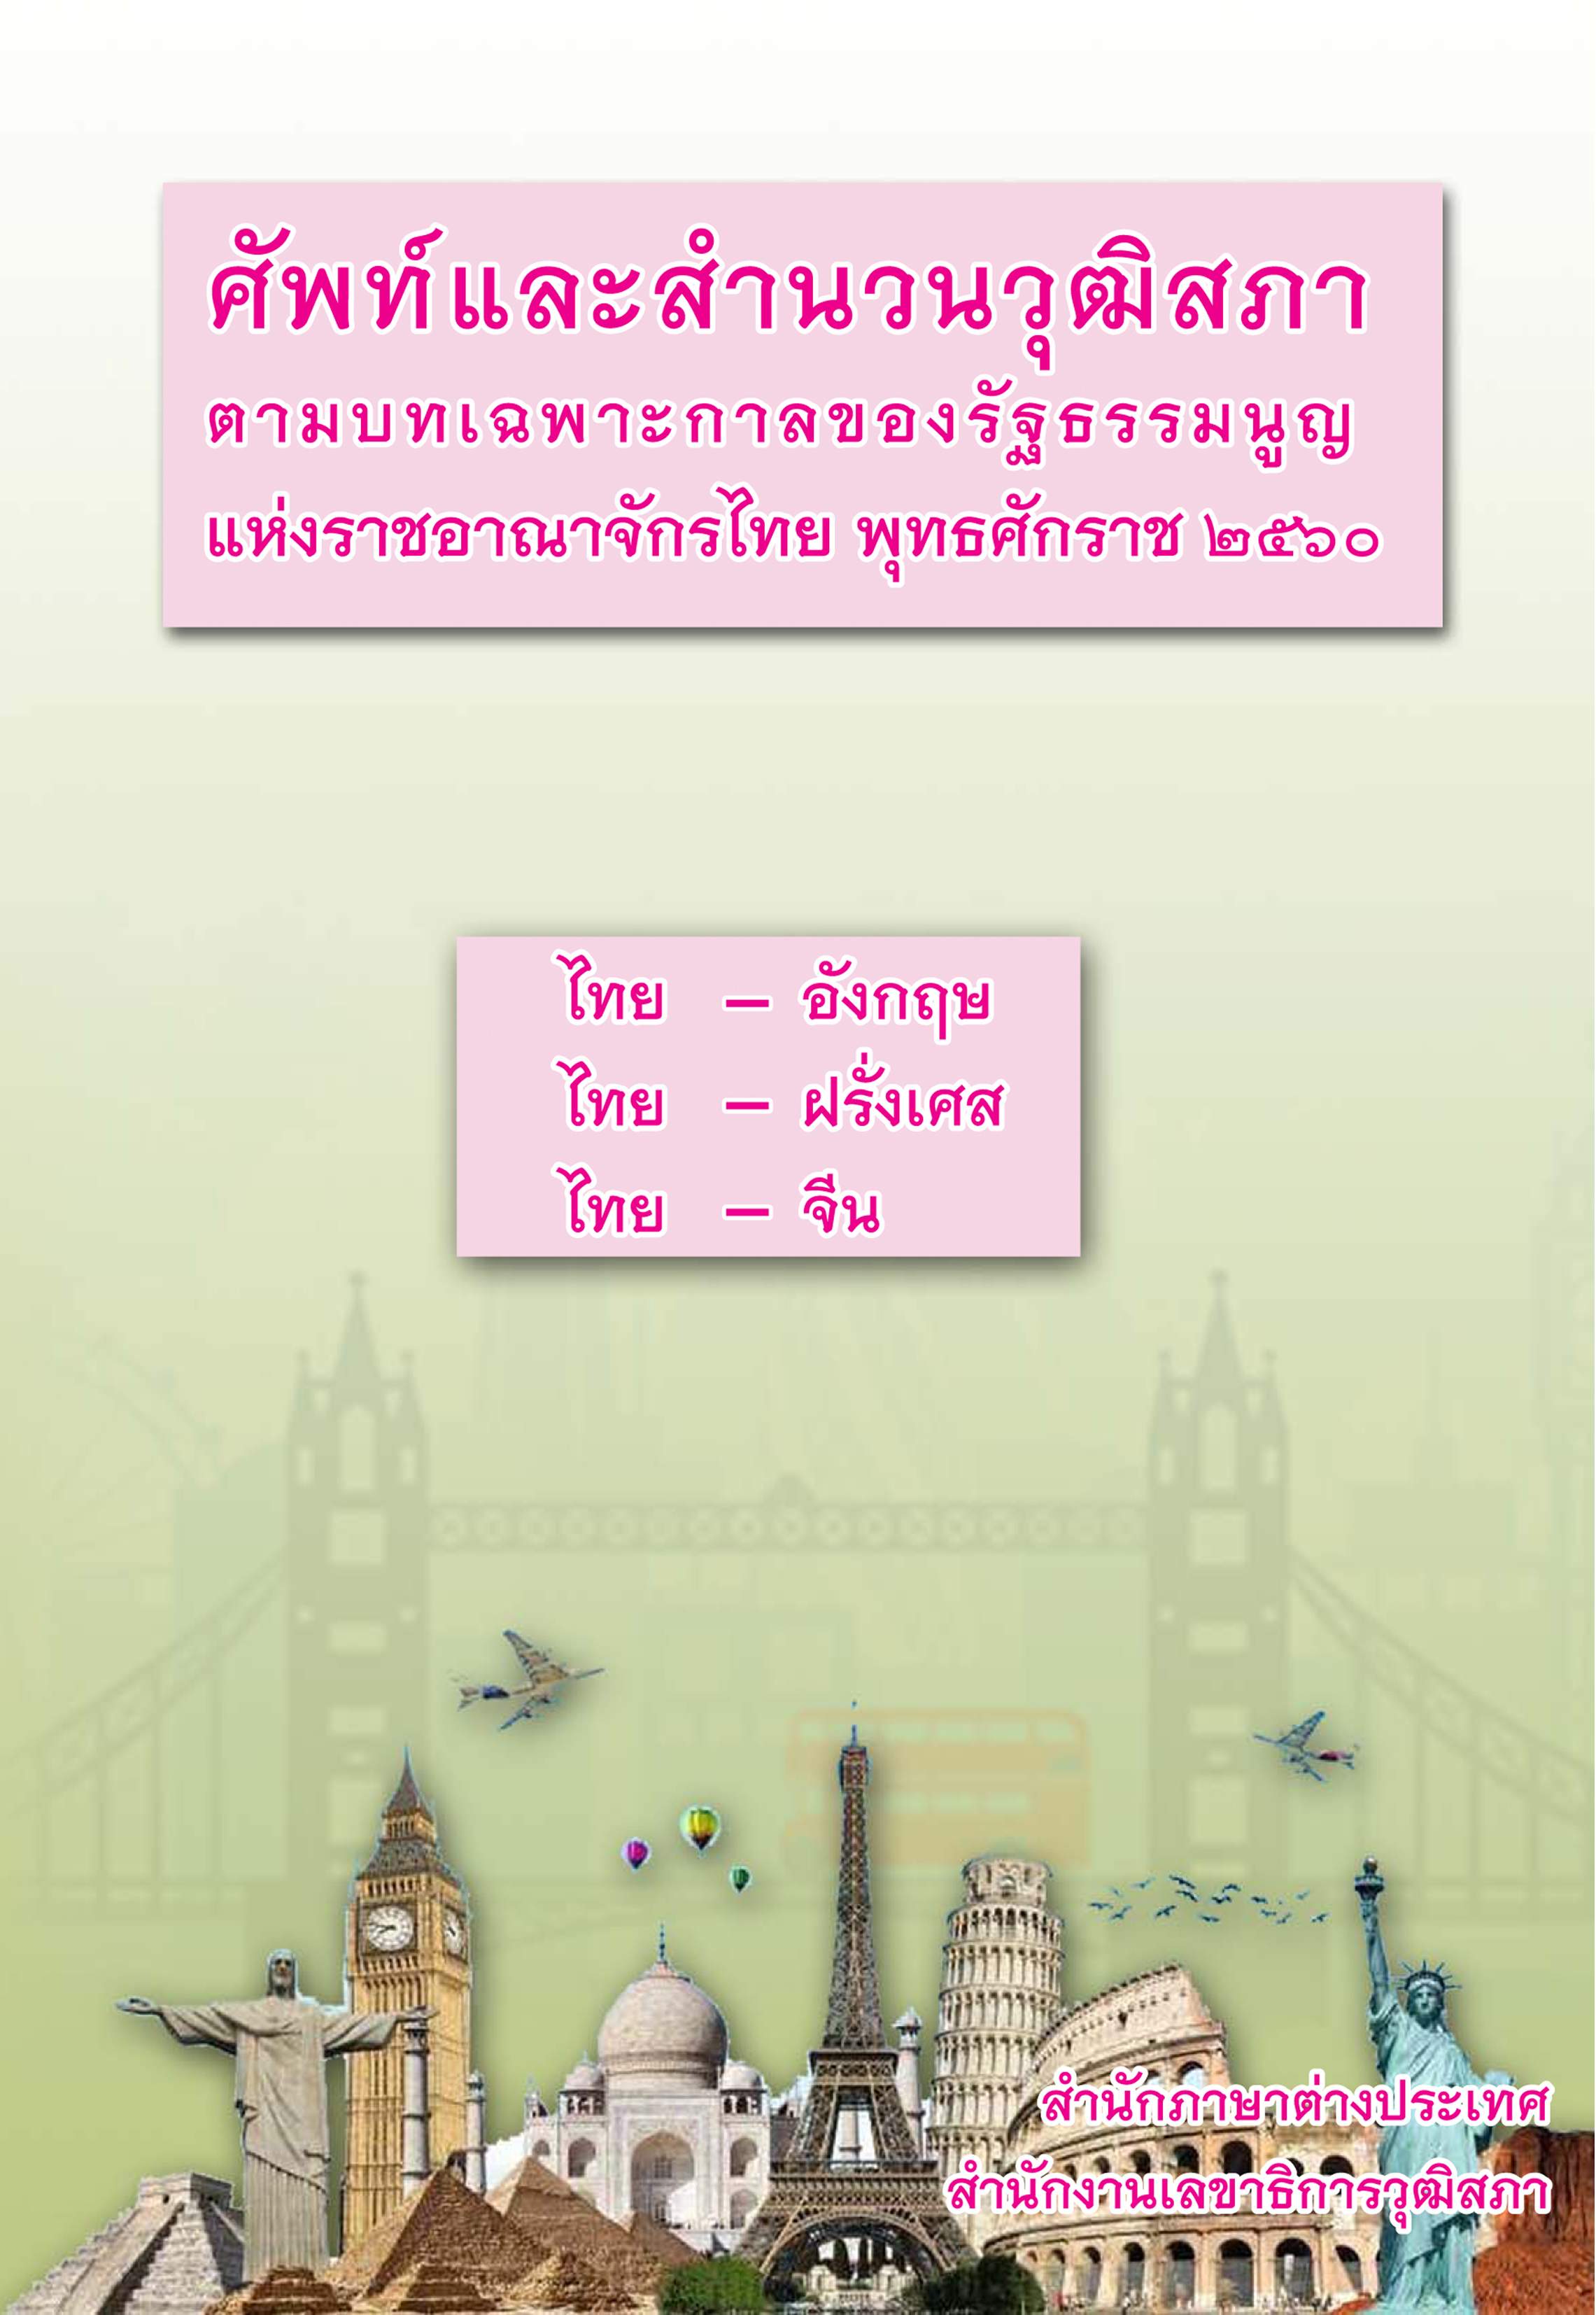 ศัพท์และสำนวนที่สภาตามบทเฉพาะกาลตามรัฐธรรมนูญแห่งราชอาณาจักรไทย   พุทธศักราช 2560